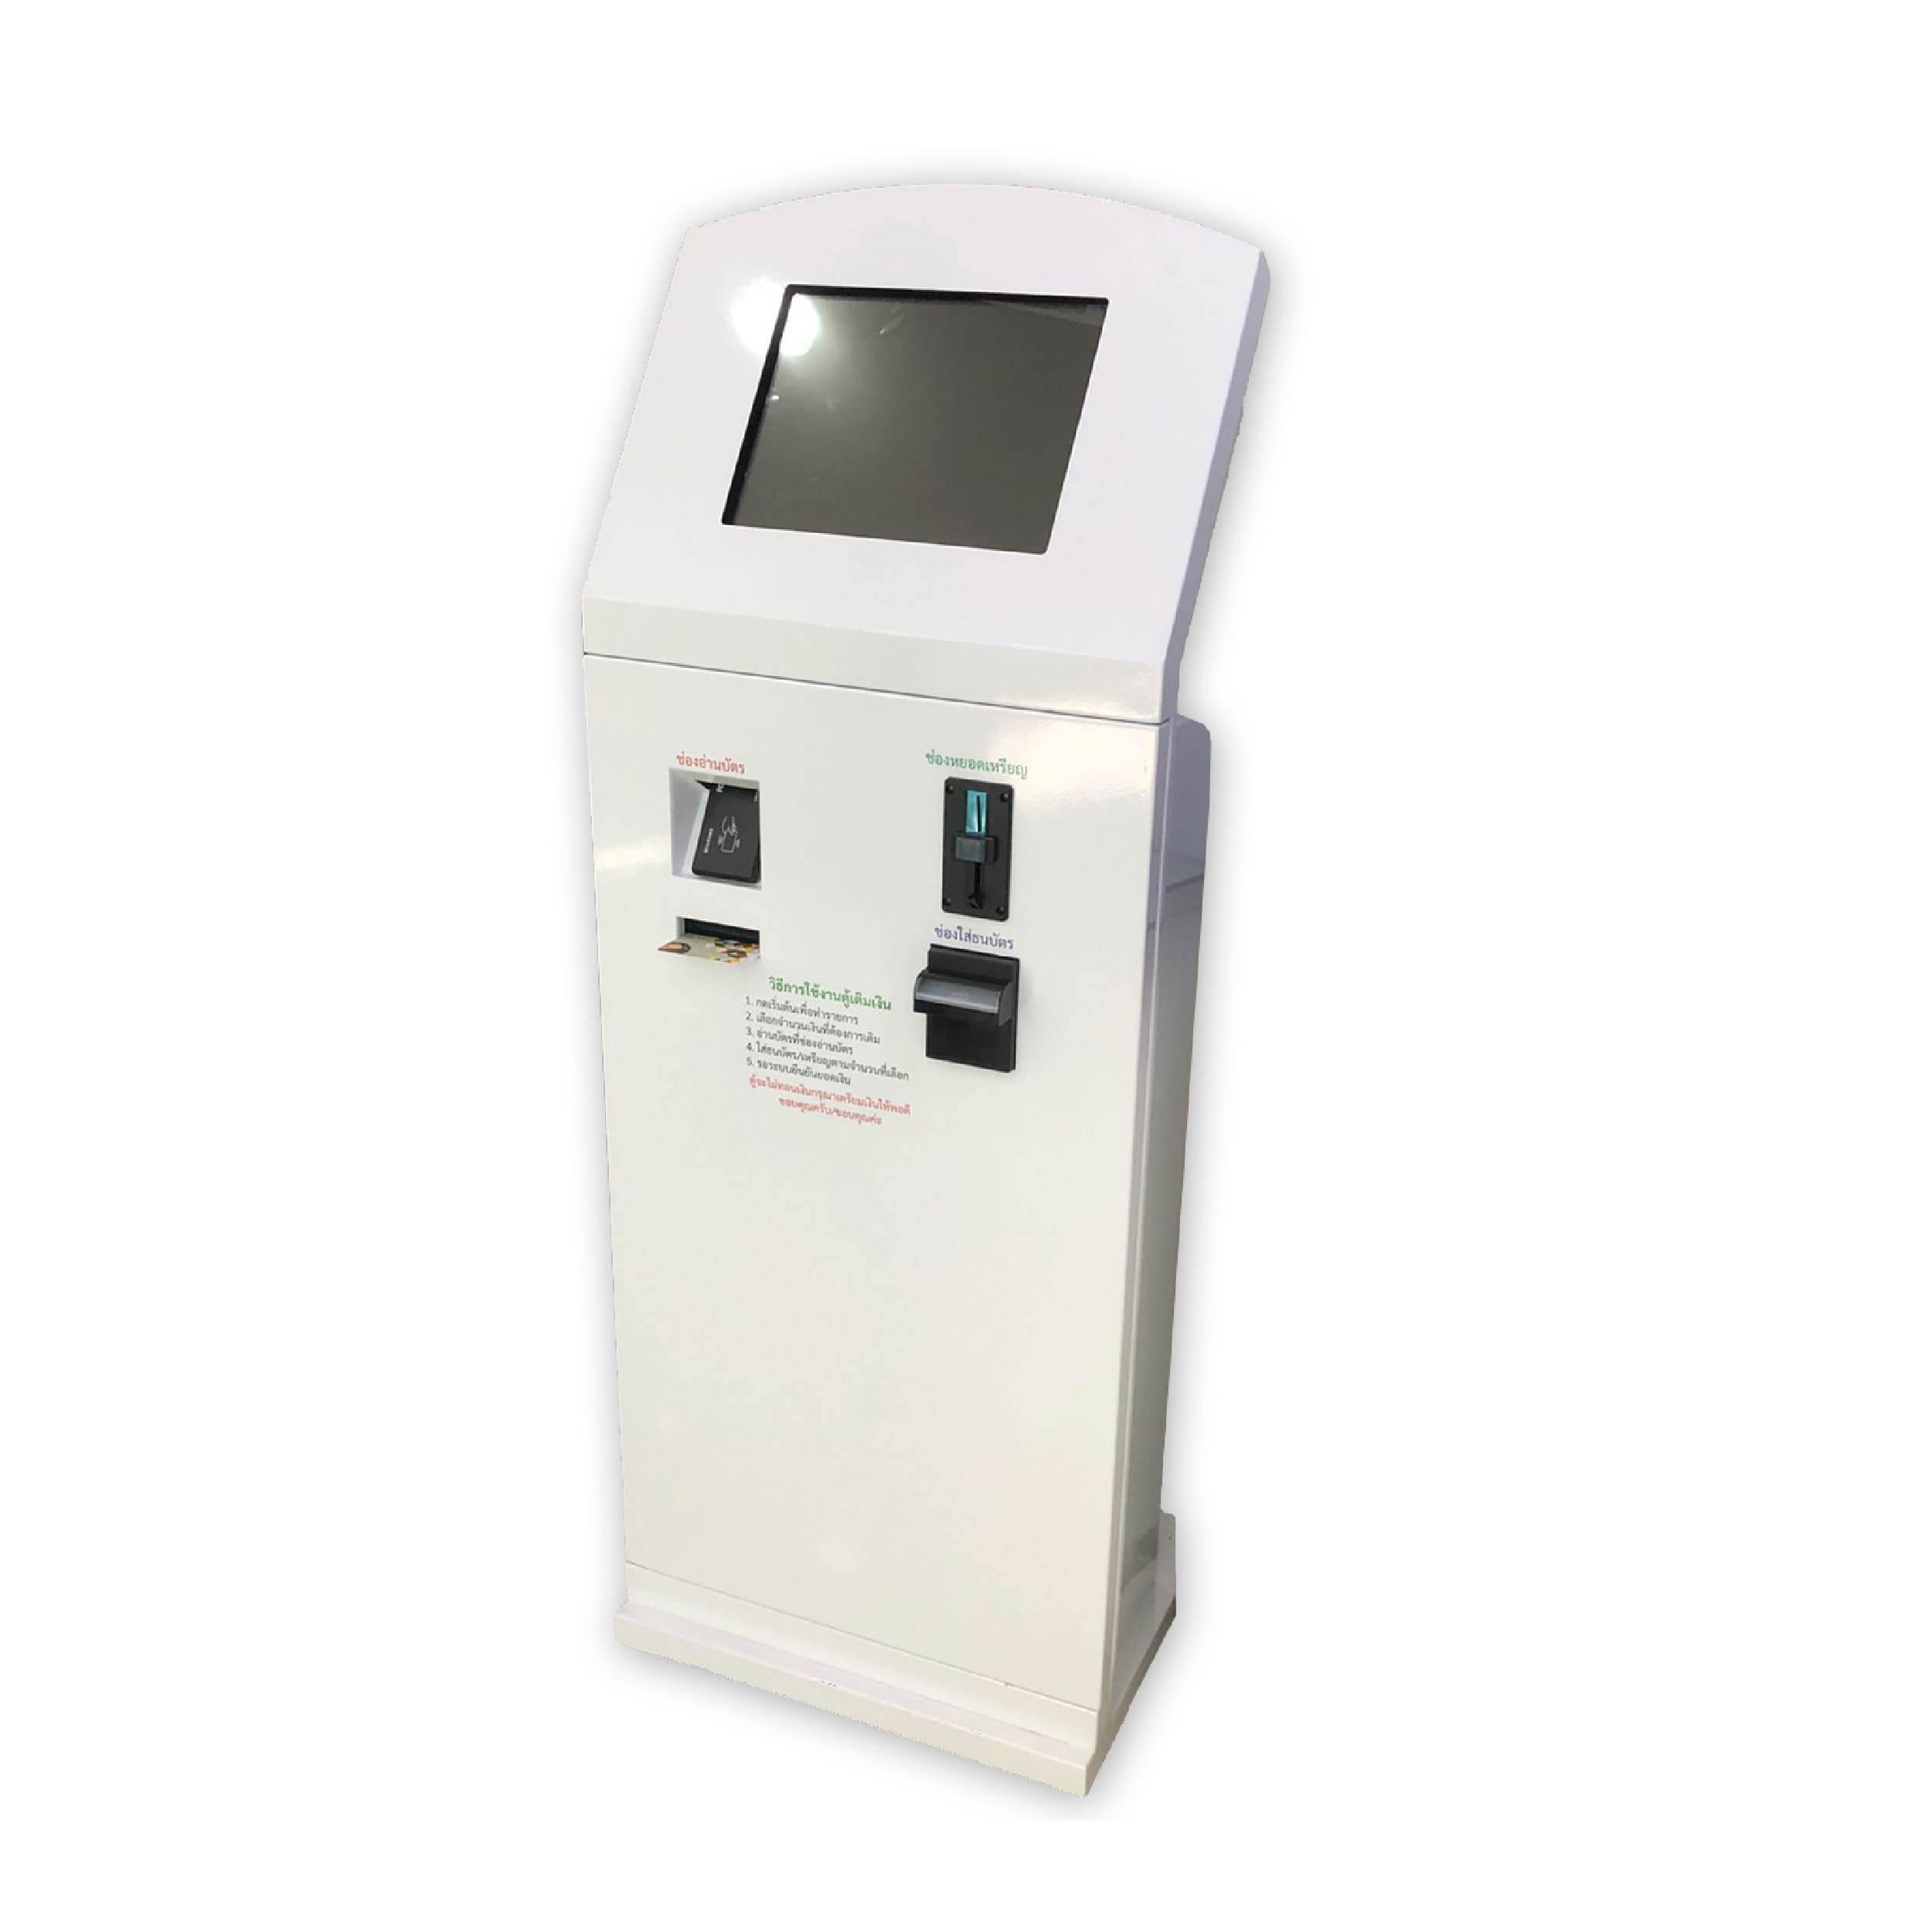 ตู้เติมเงินอัตโนมัติ Vending Machine WF-Top Up Card Machine